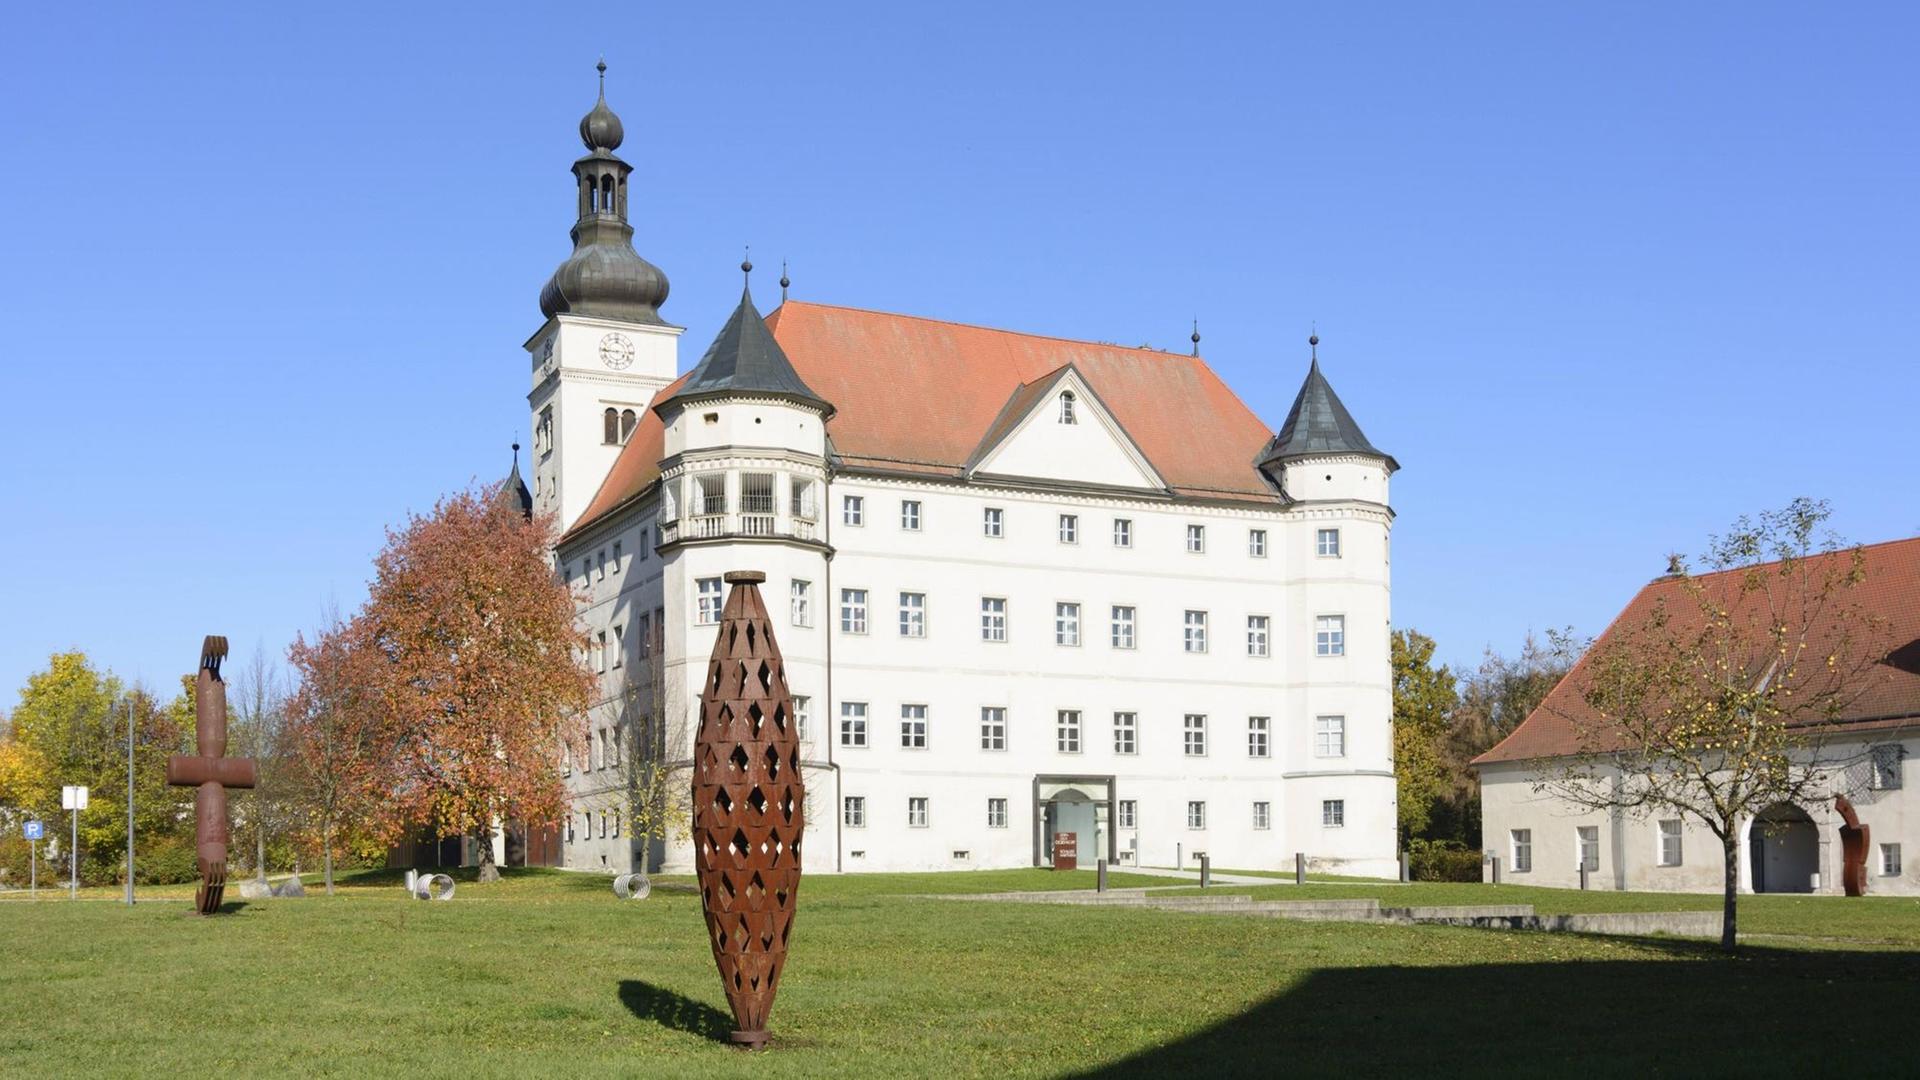 Blick auf das Schloss Hartheim umgeben von abstrakten Skulpturen aus Metall